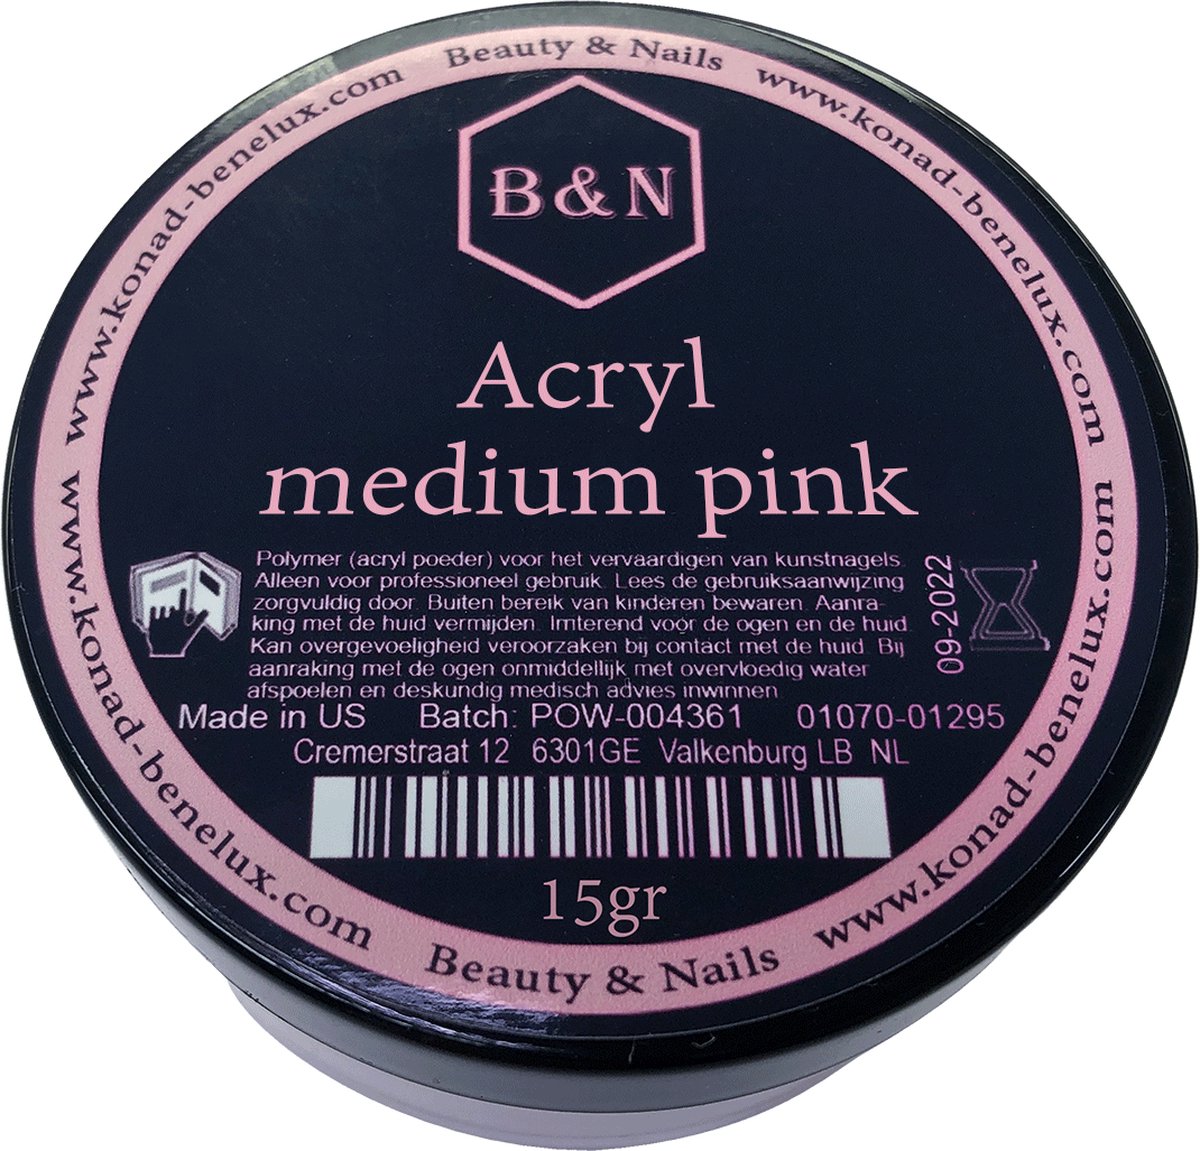 Acryl - medium pink - 15 gr | B&N - acrylpoeder - VEGAN - acrylpoeder